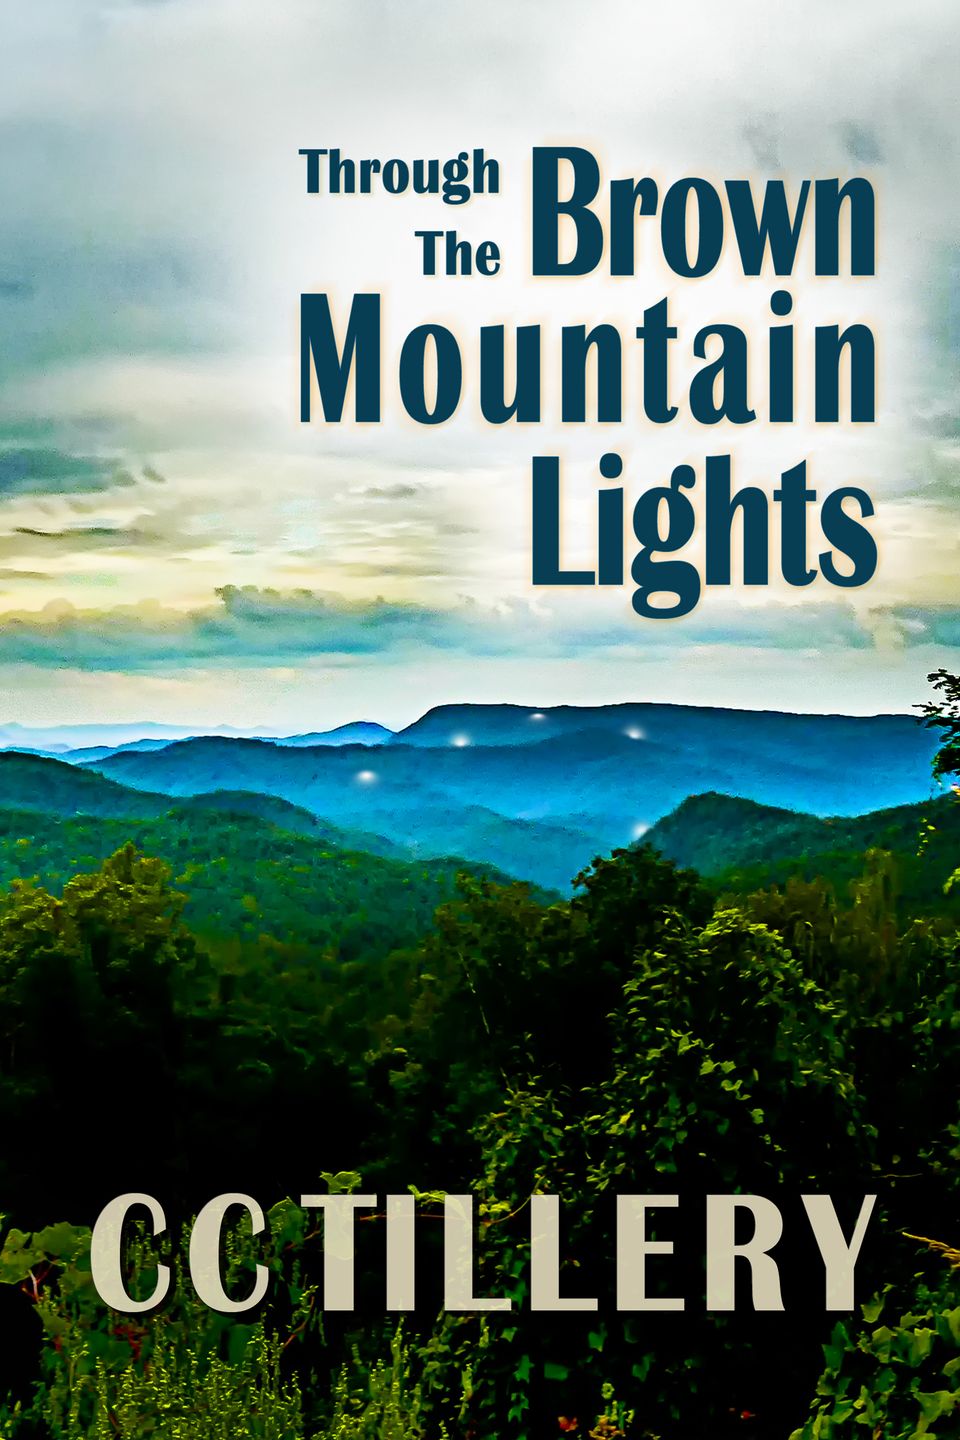 Brown mountain lights through large